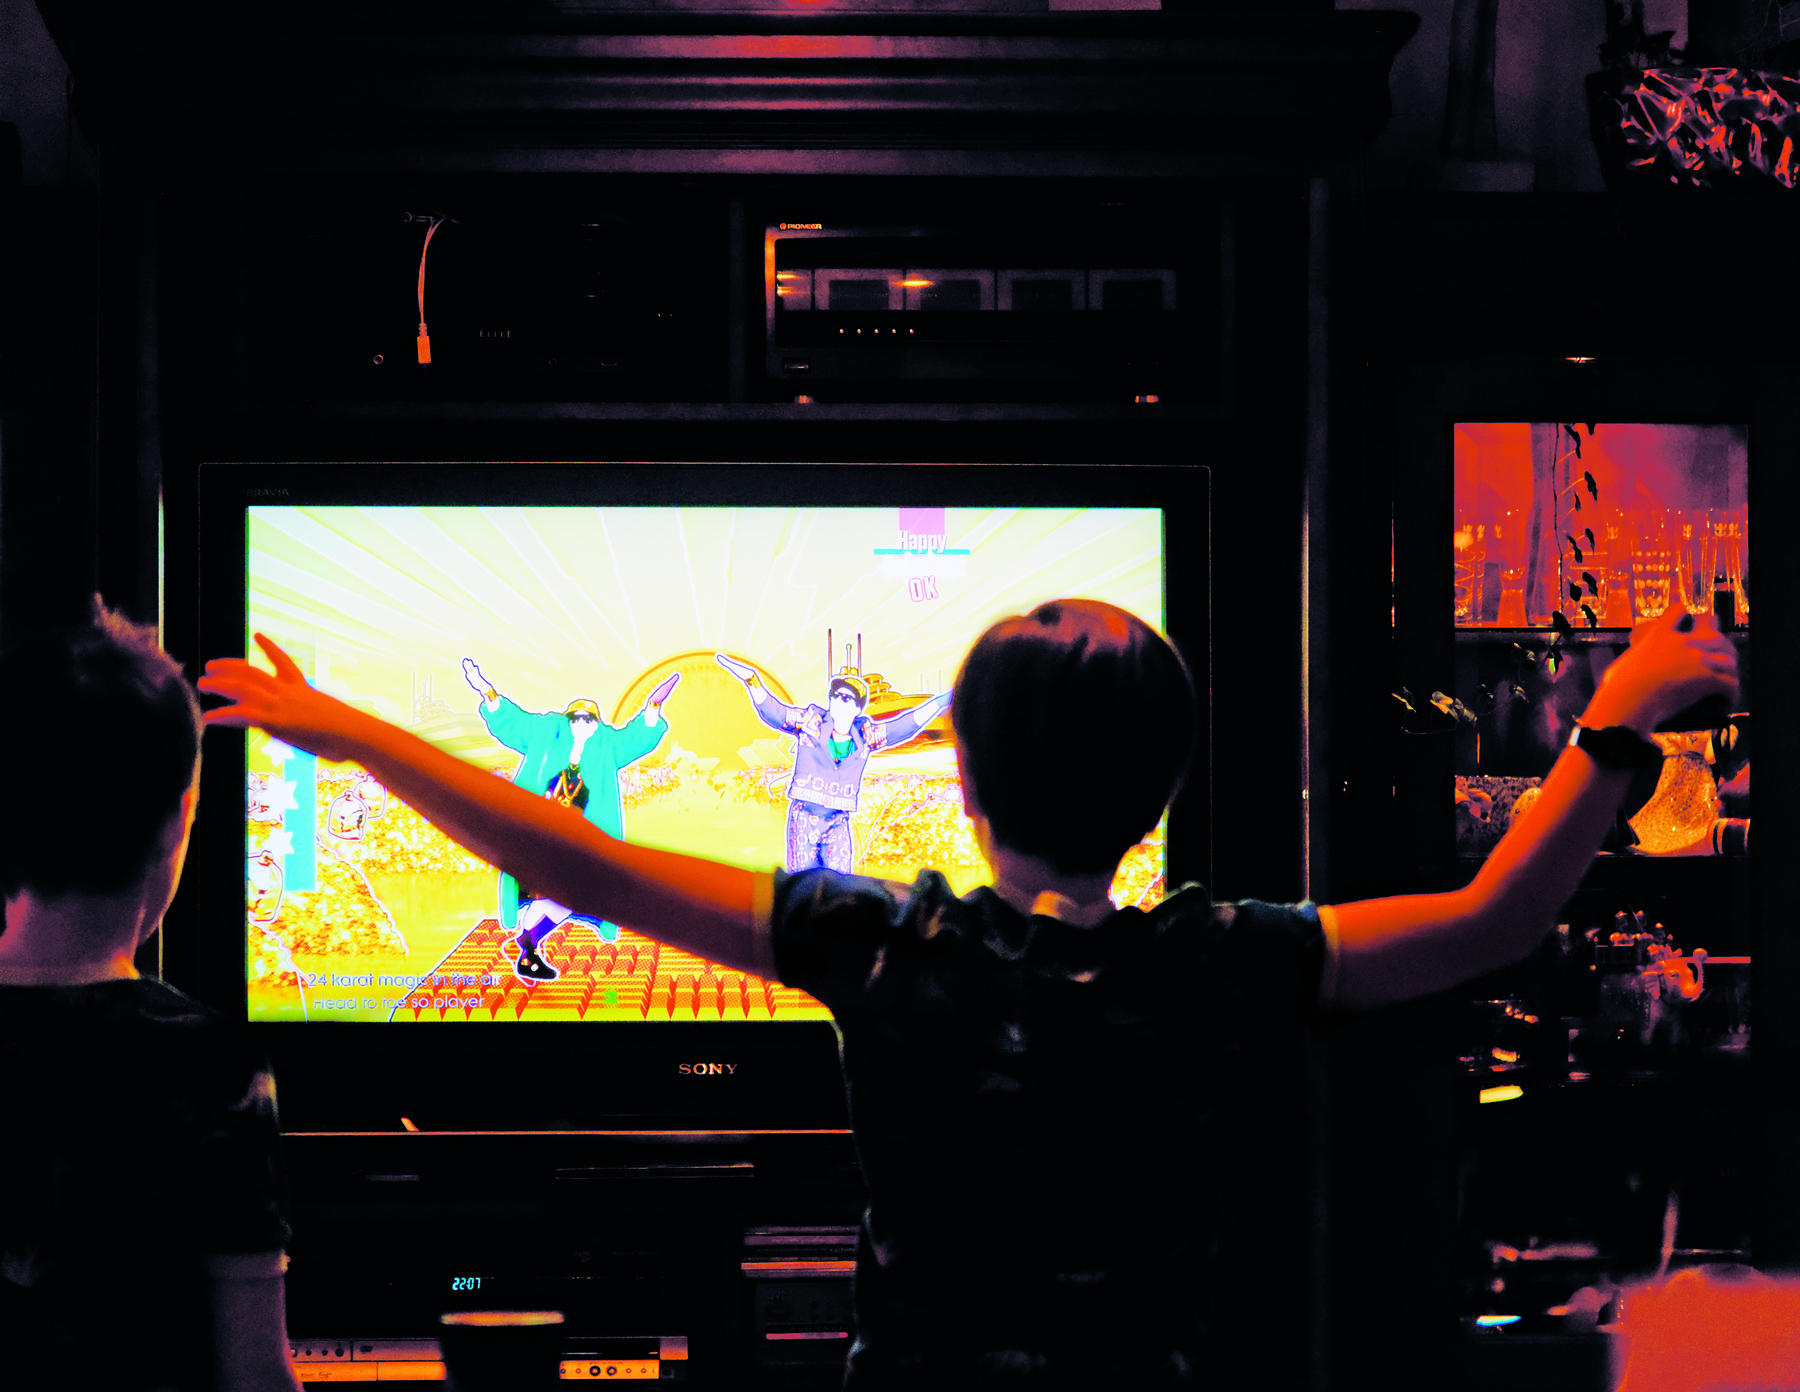 Fotografia. Uma criança está em pé e com os braços abertos de frente para uma televisão; na tela há um jogo com duas pessoas dançando.